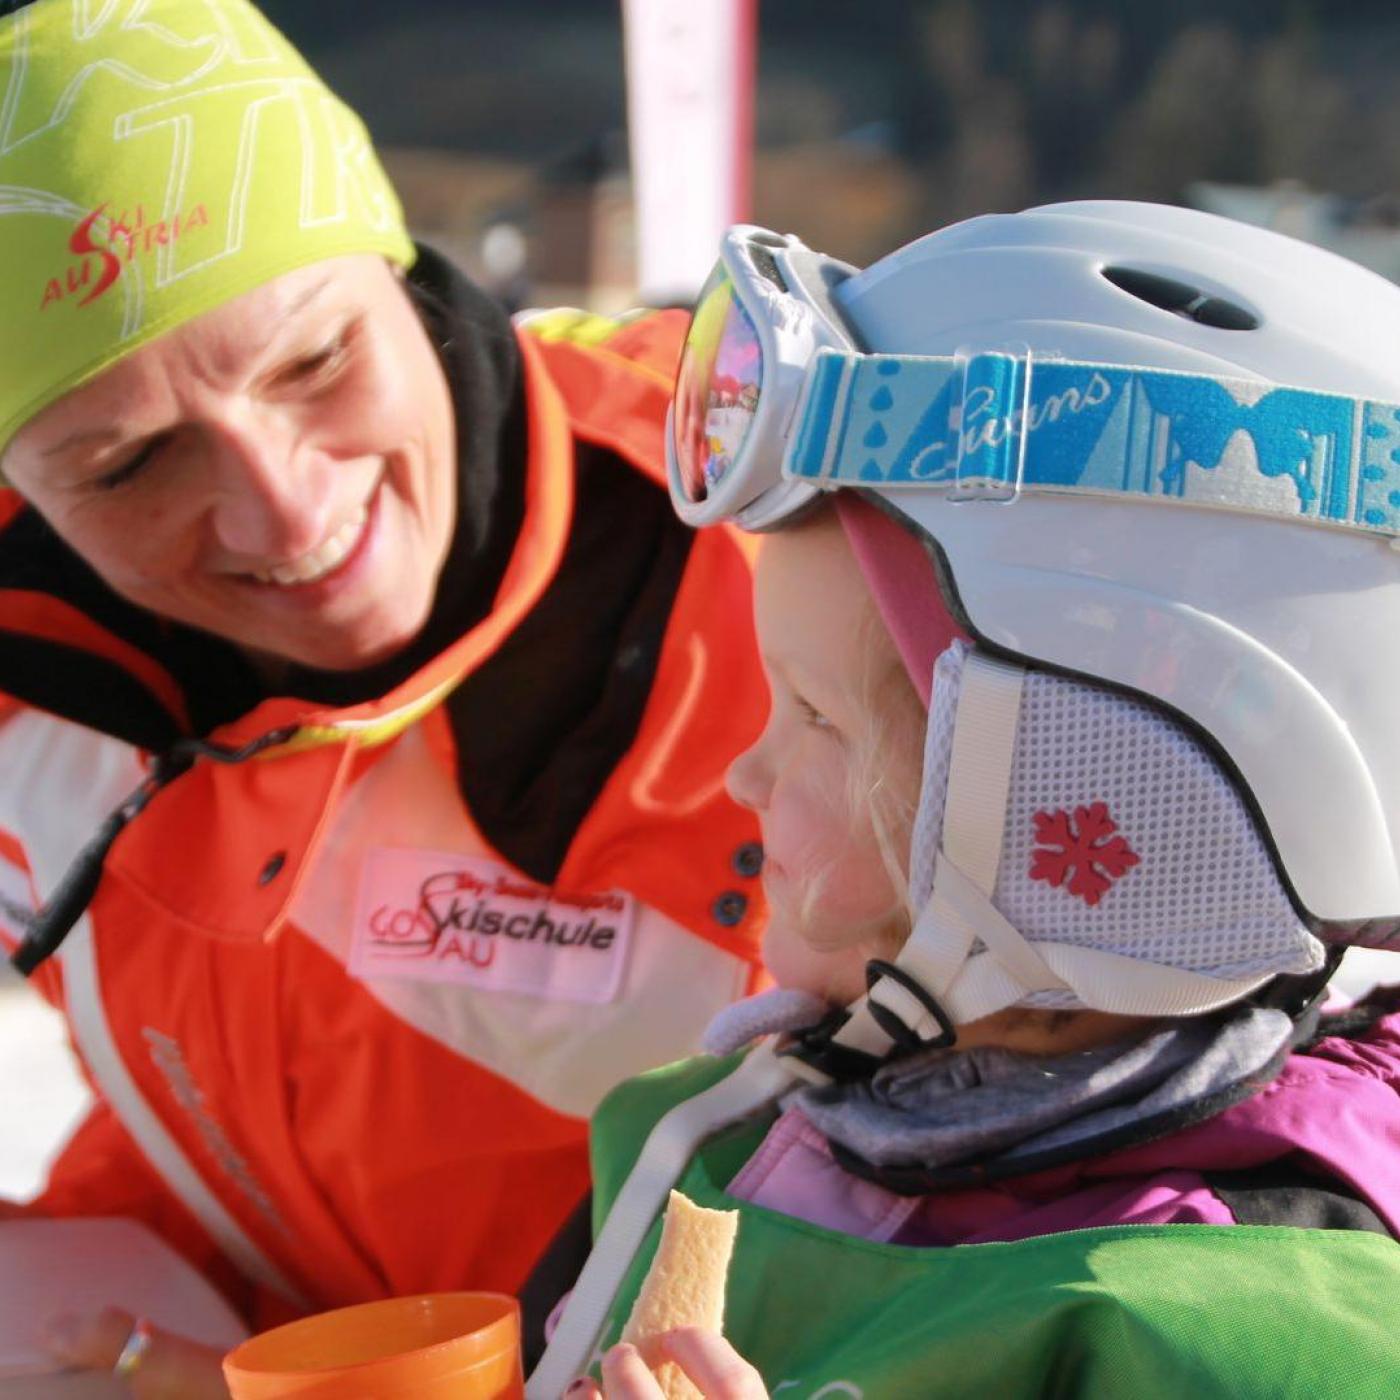 Kind bekommt Privatskiunterricht in der Skischule Gosau.